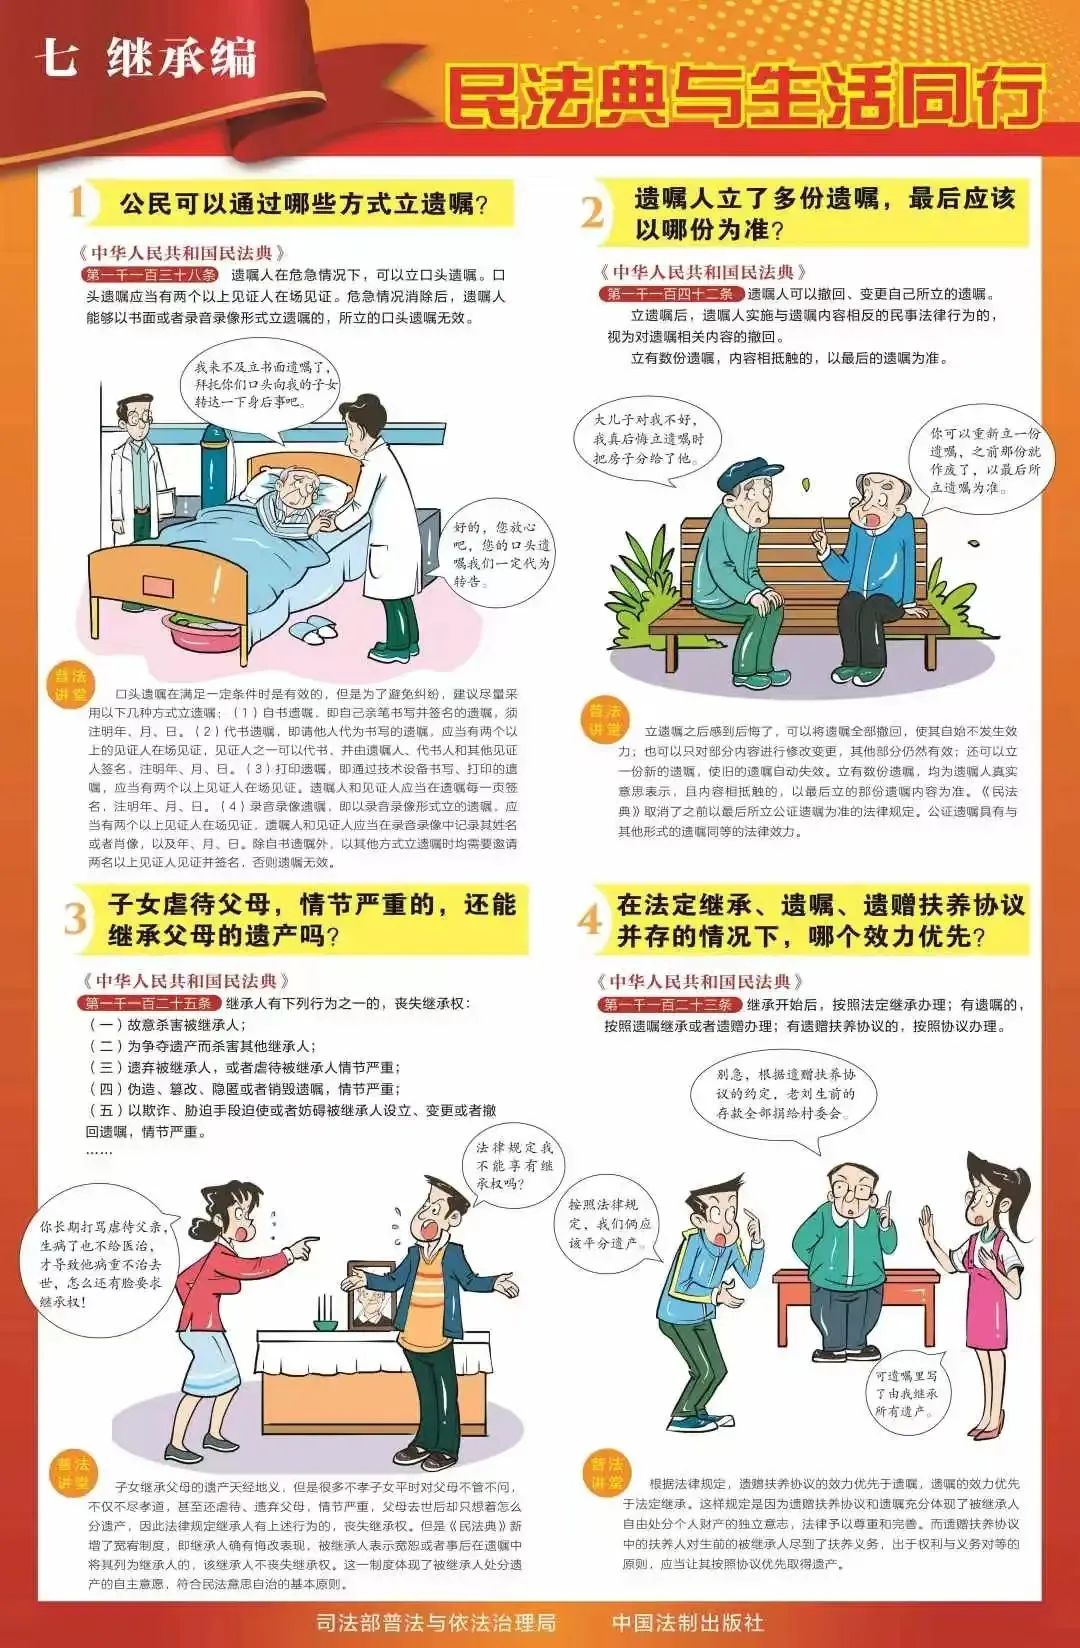 民法典学习宣传丨九张挂图带您速览民法典(图8)